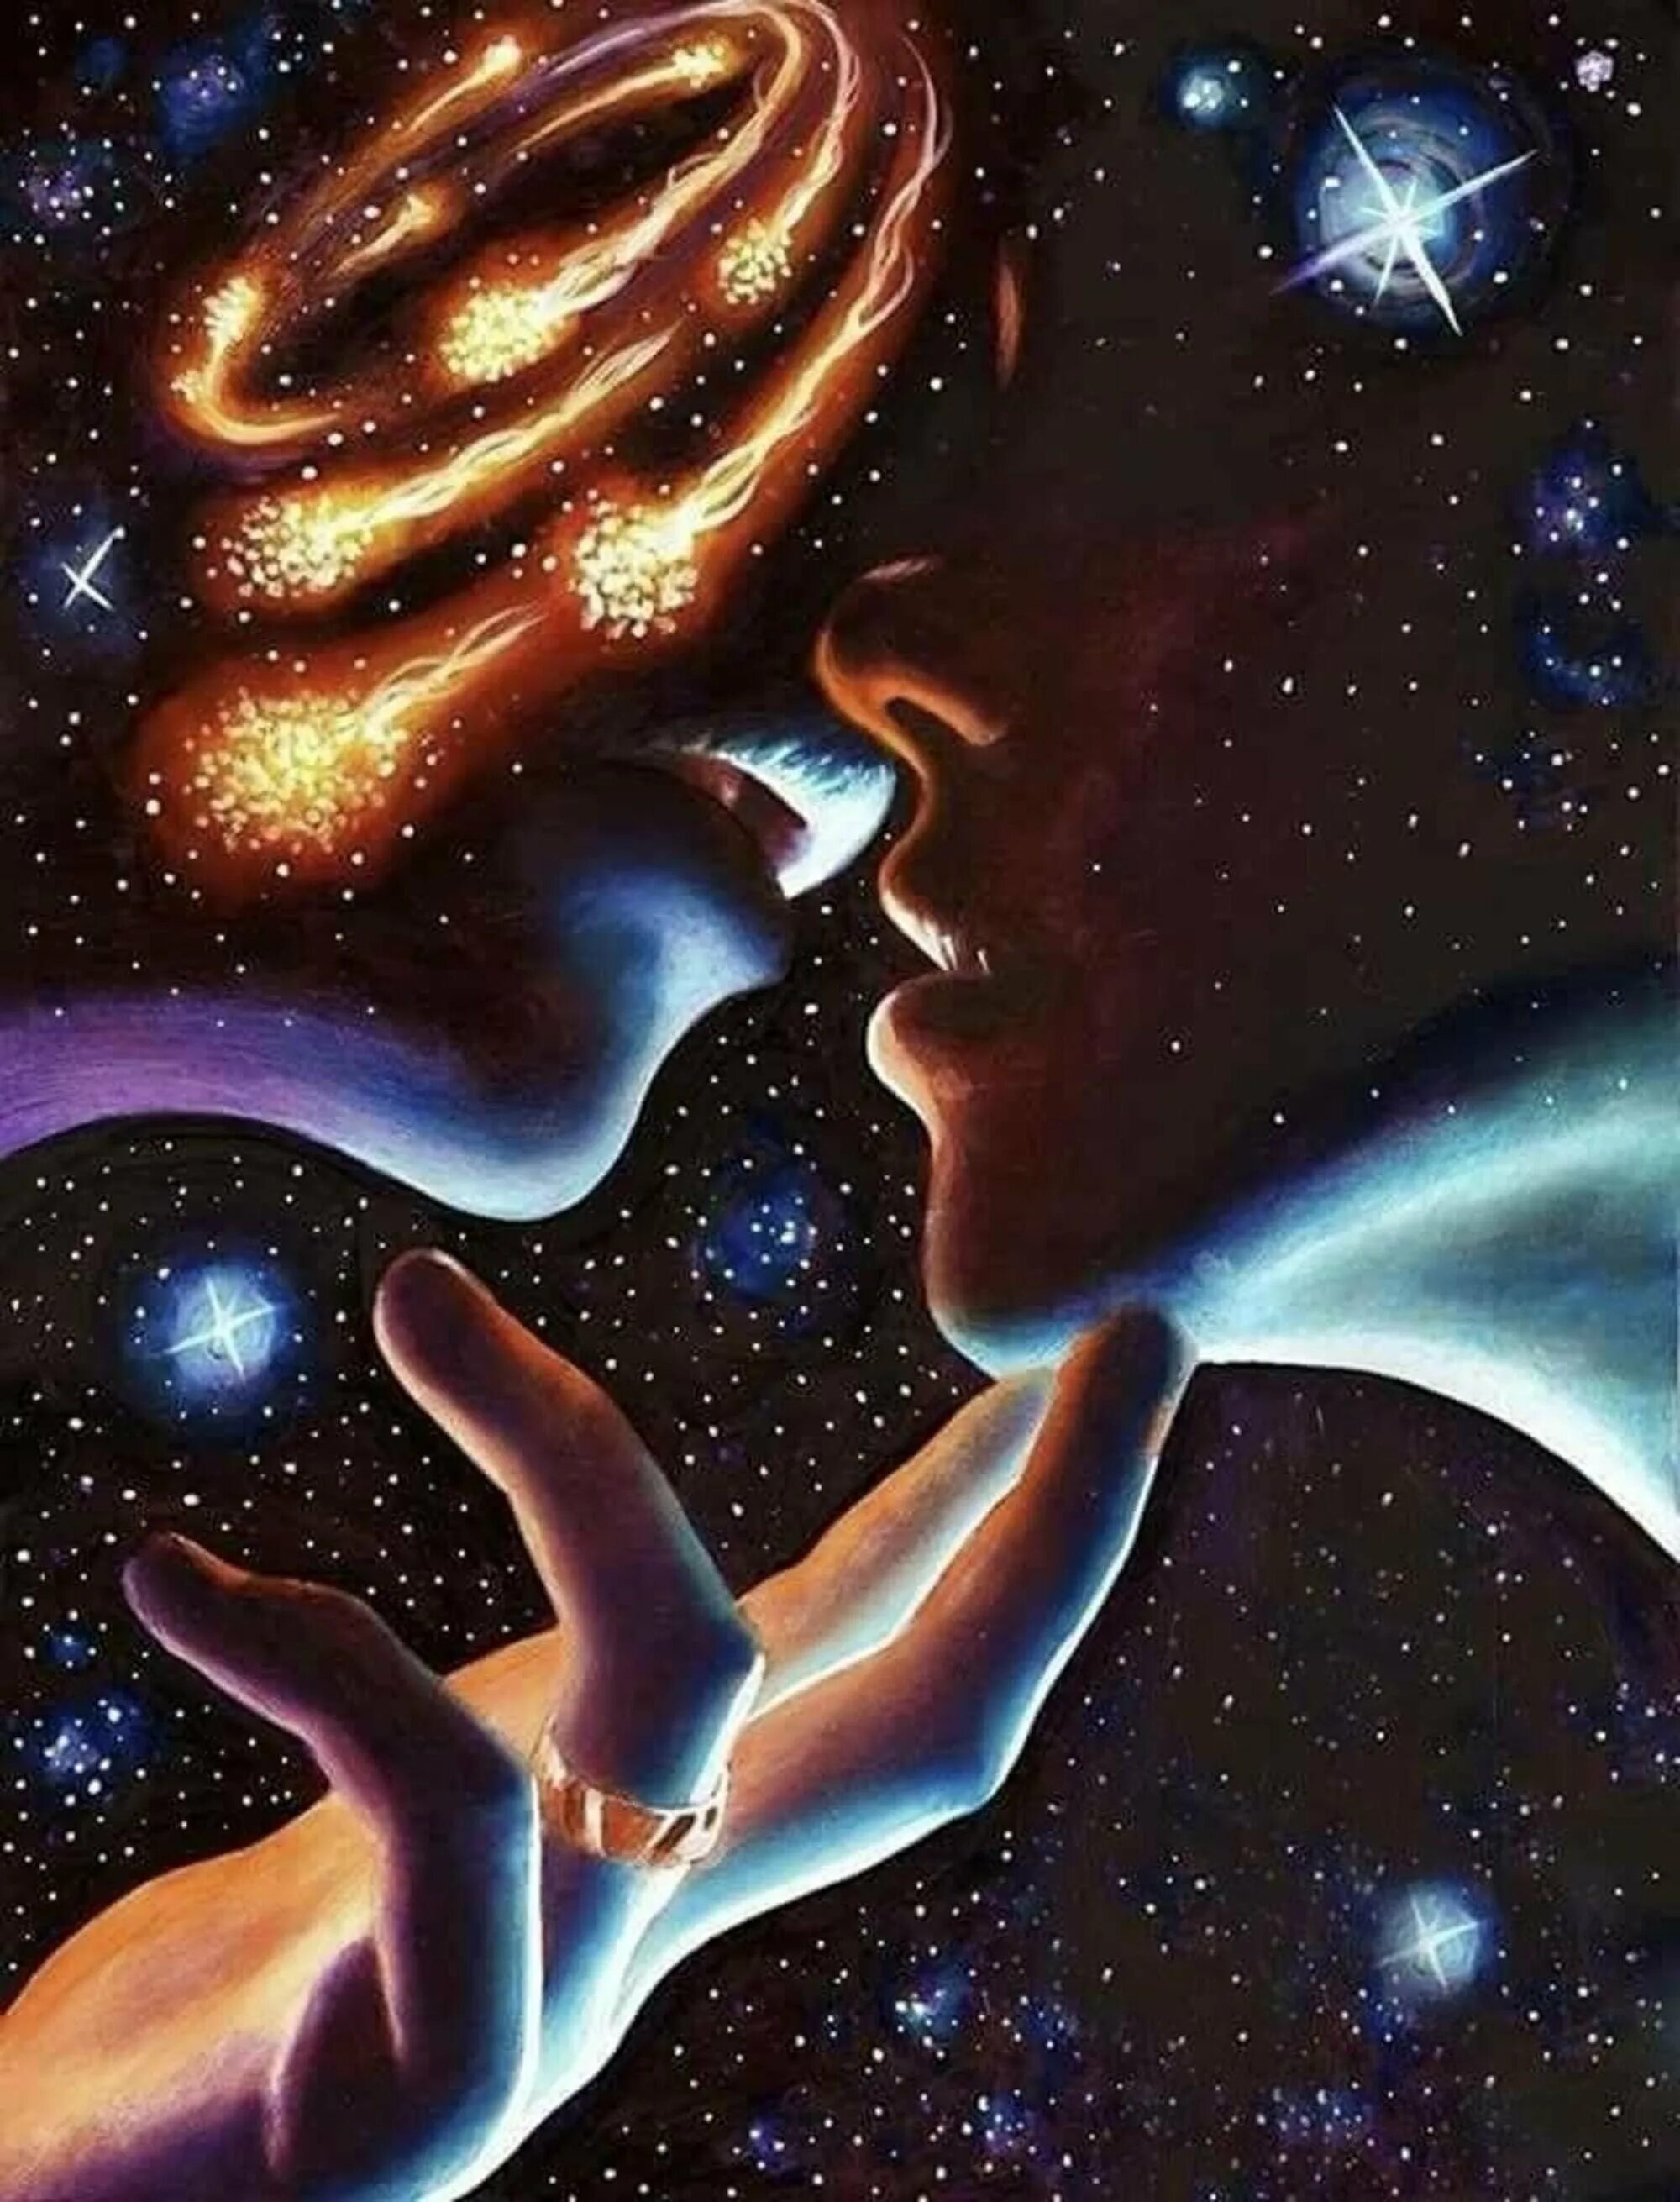 Души близнецовые пламена. Мужчина и женщина космос. Космическая любовь. Влюбленные в космосе. Вселенная мужчина и женщина.